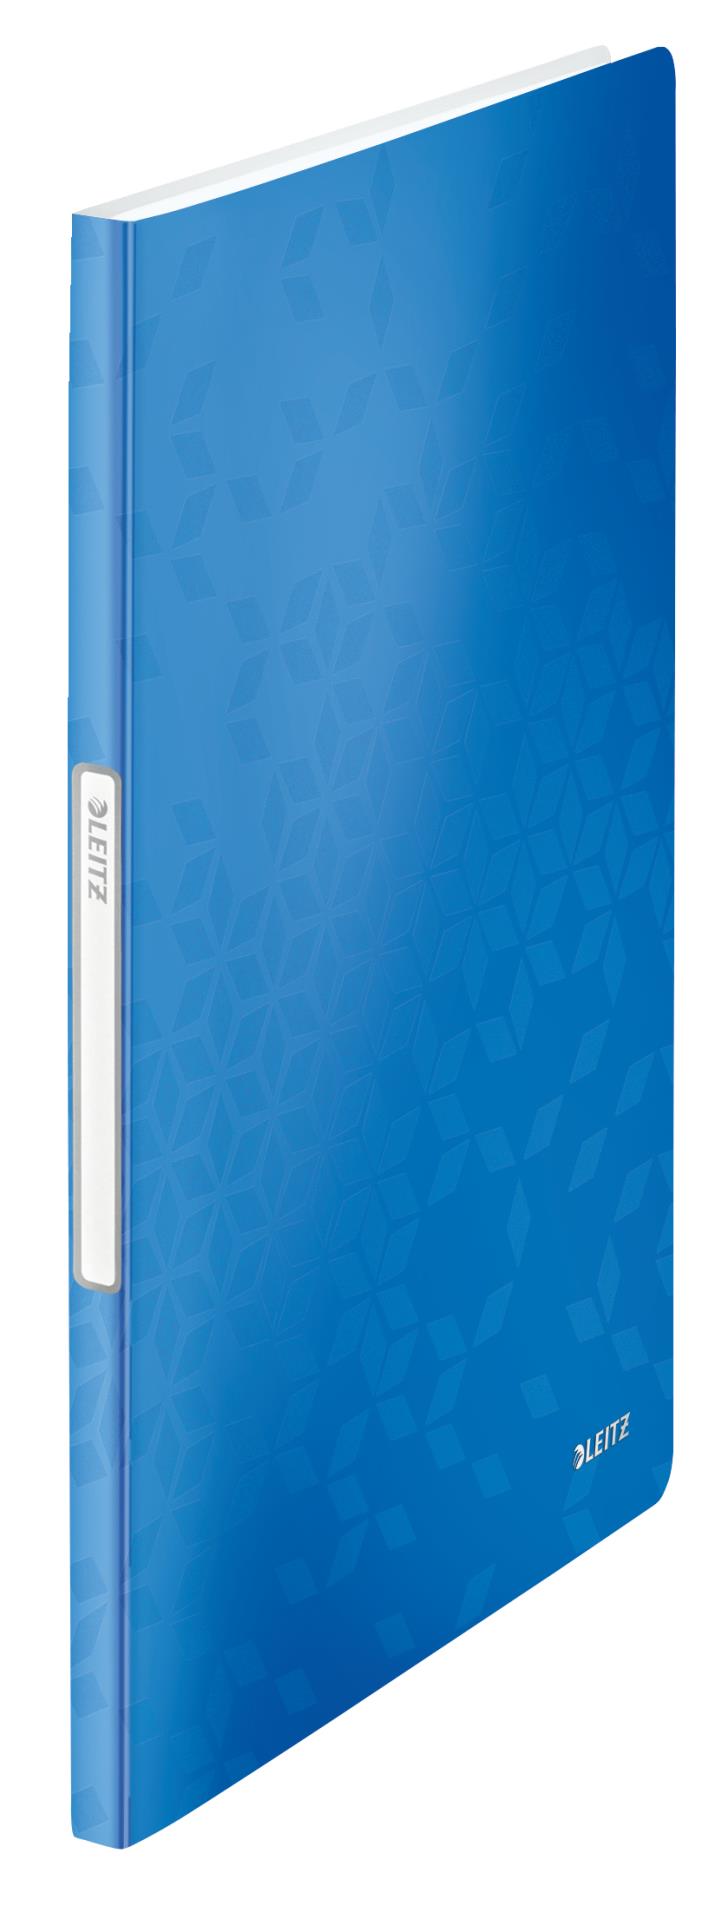 Katalogová kniha Leitz WOW - A4, 20 kapes, modrá